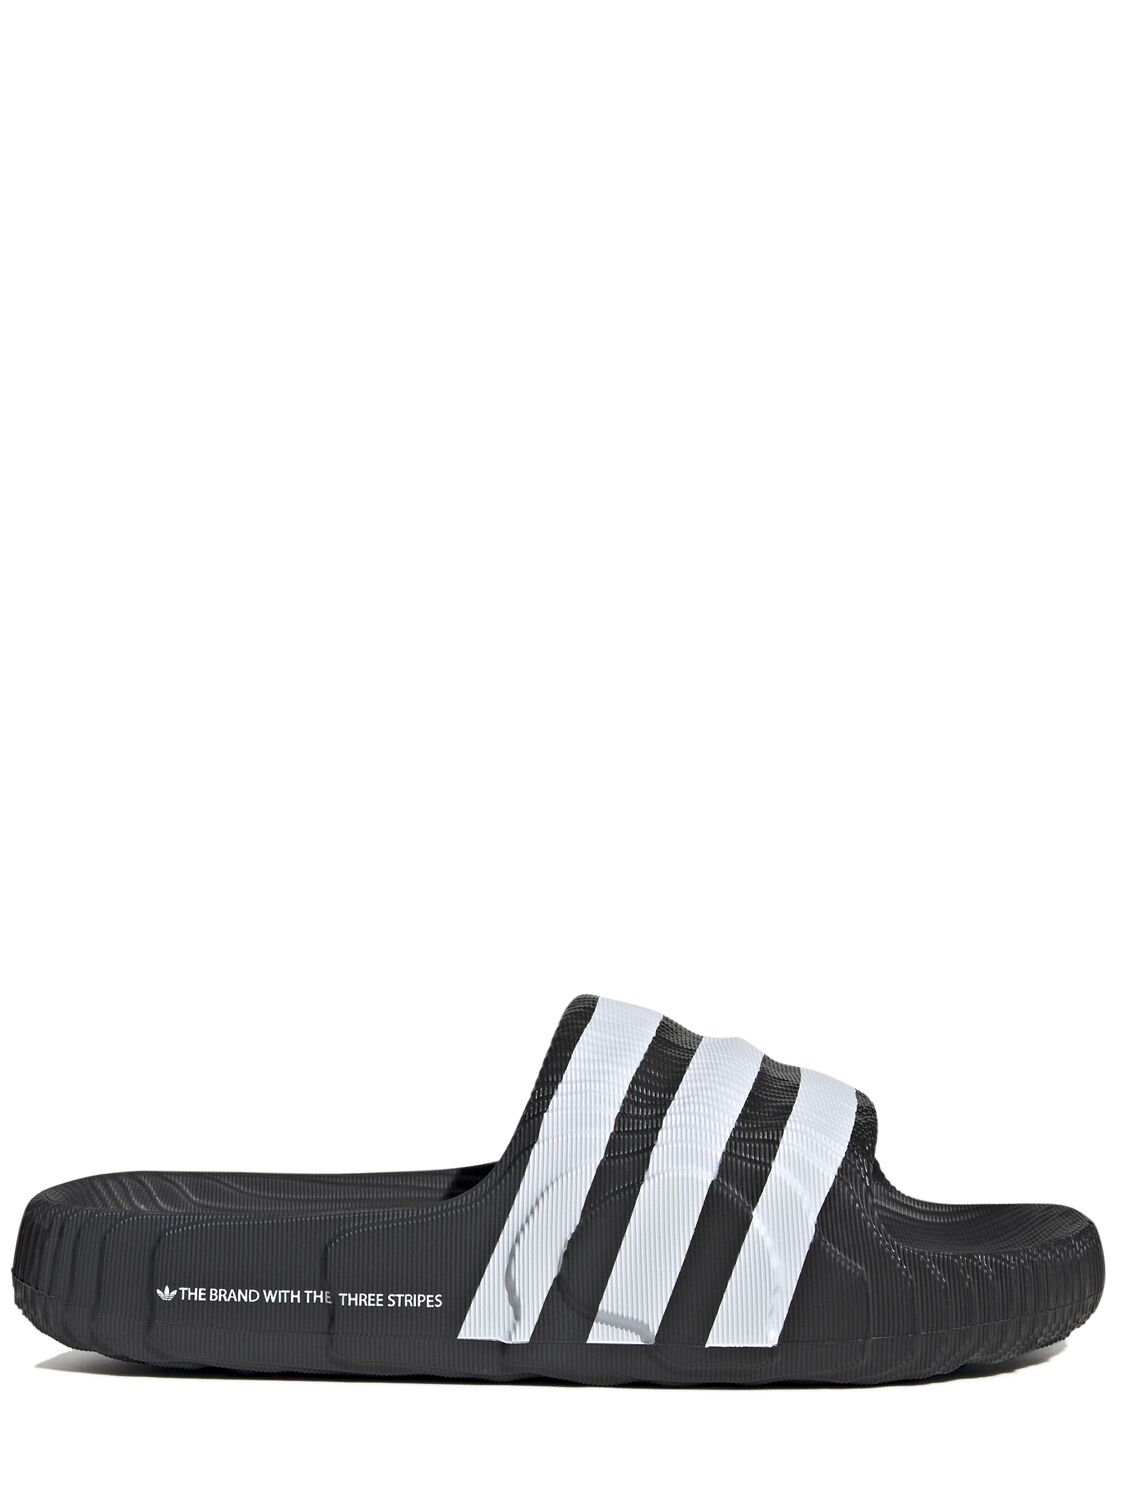 Adidas Originals Adilette 22 Slide Sandals In Black,white